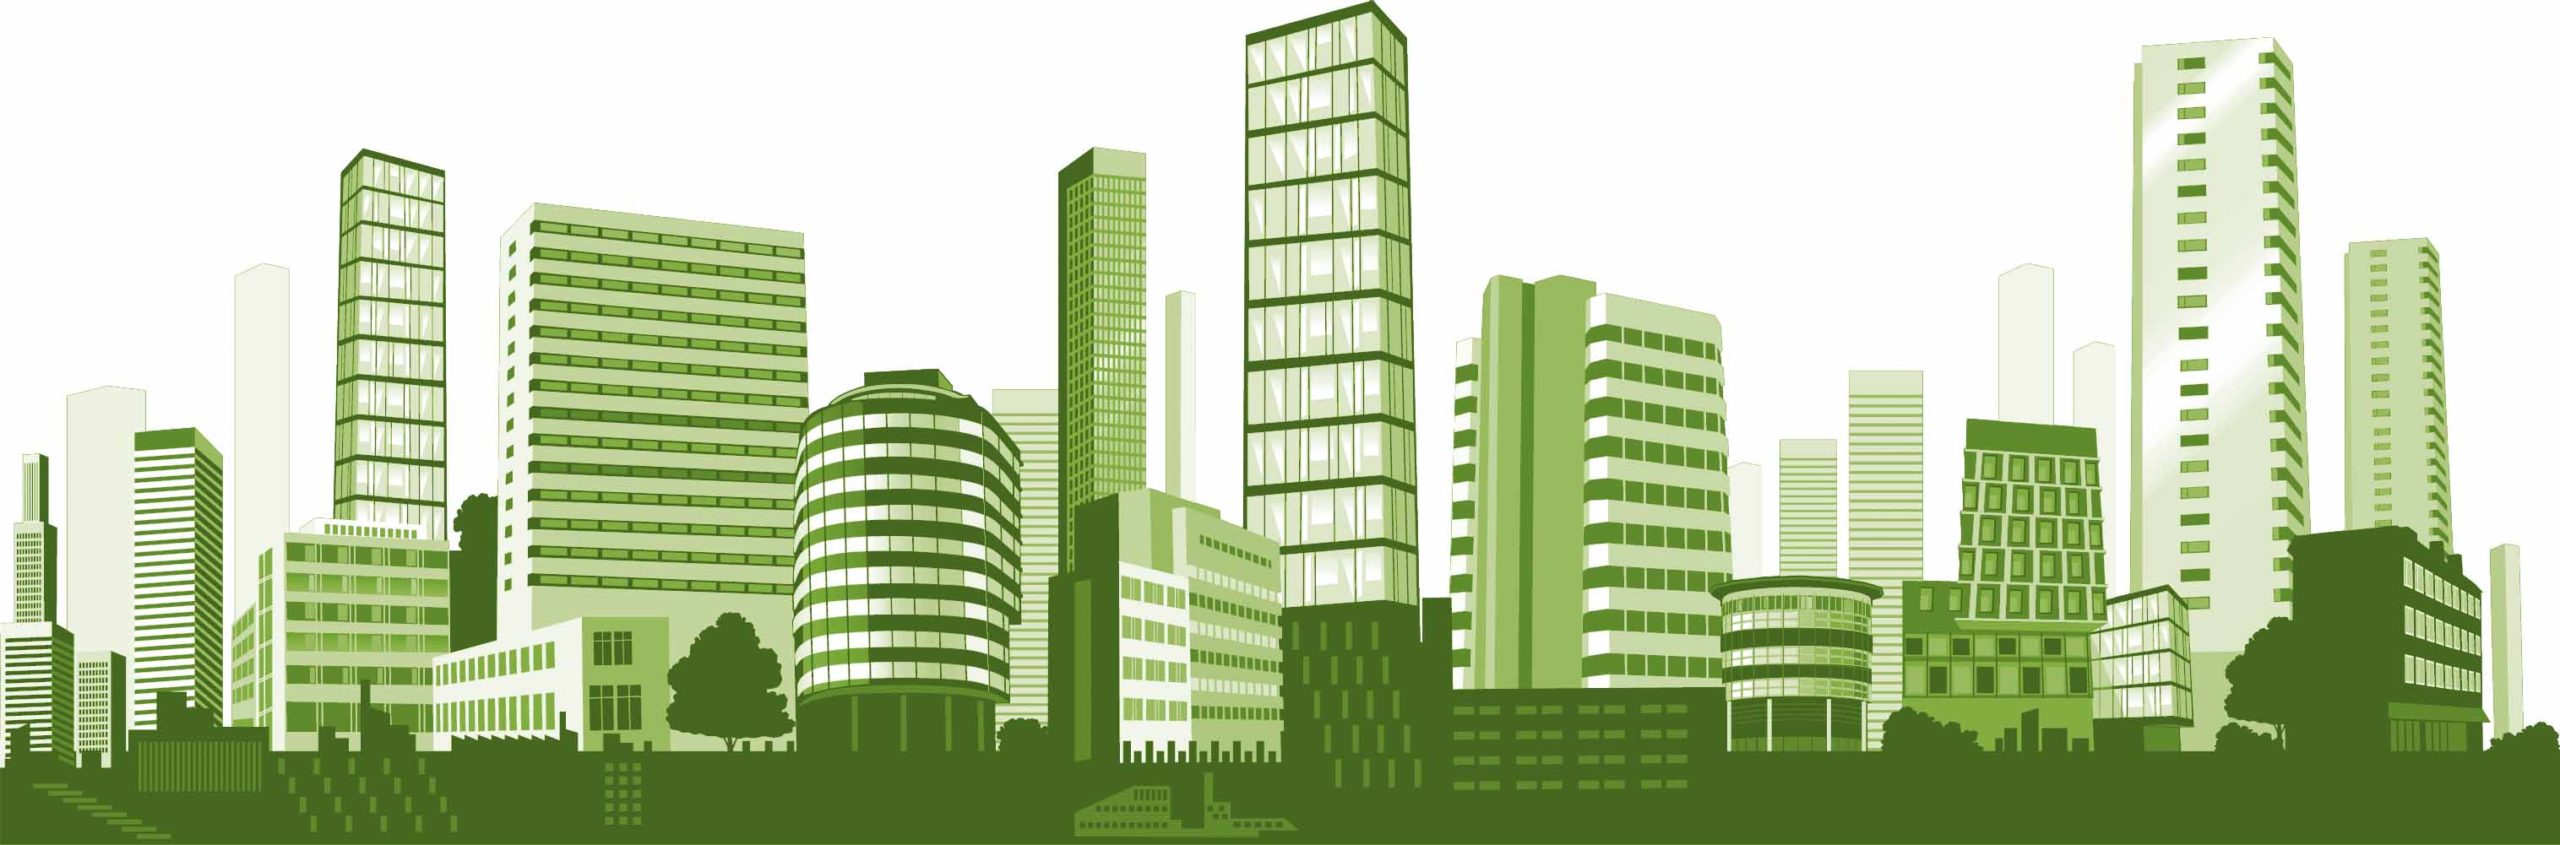 Green building sostenibilità ambientale architettura sostenibile